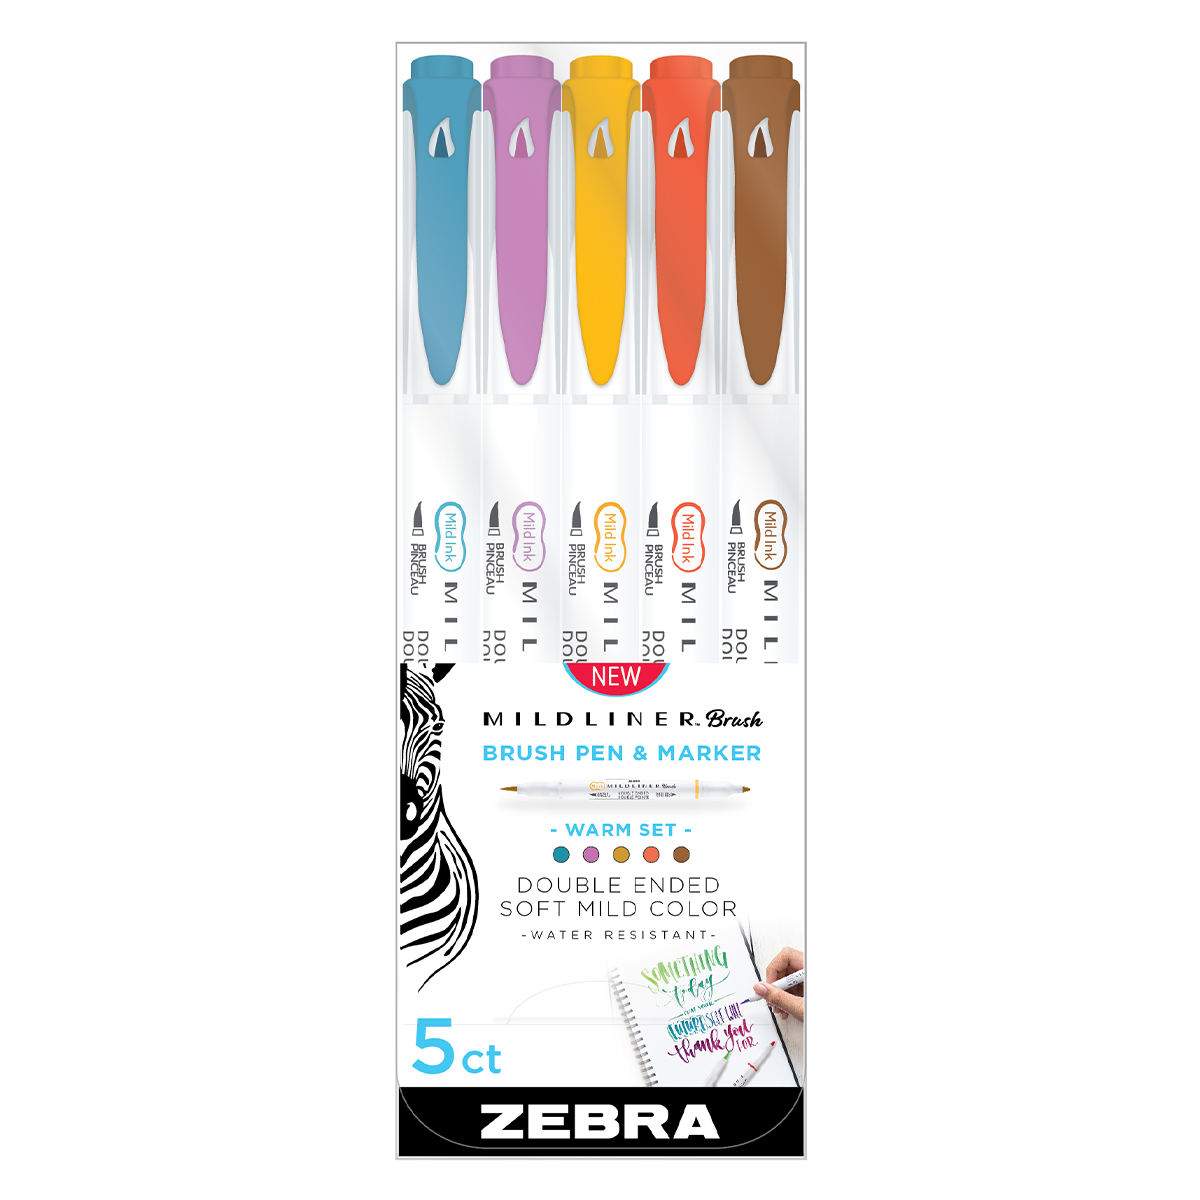 Mildliner Highlighter - Zebra double ended marker - Zebra Pen EU